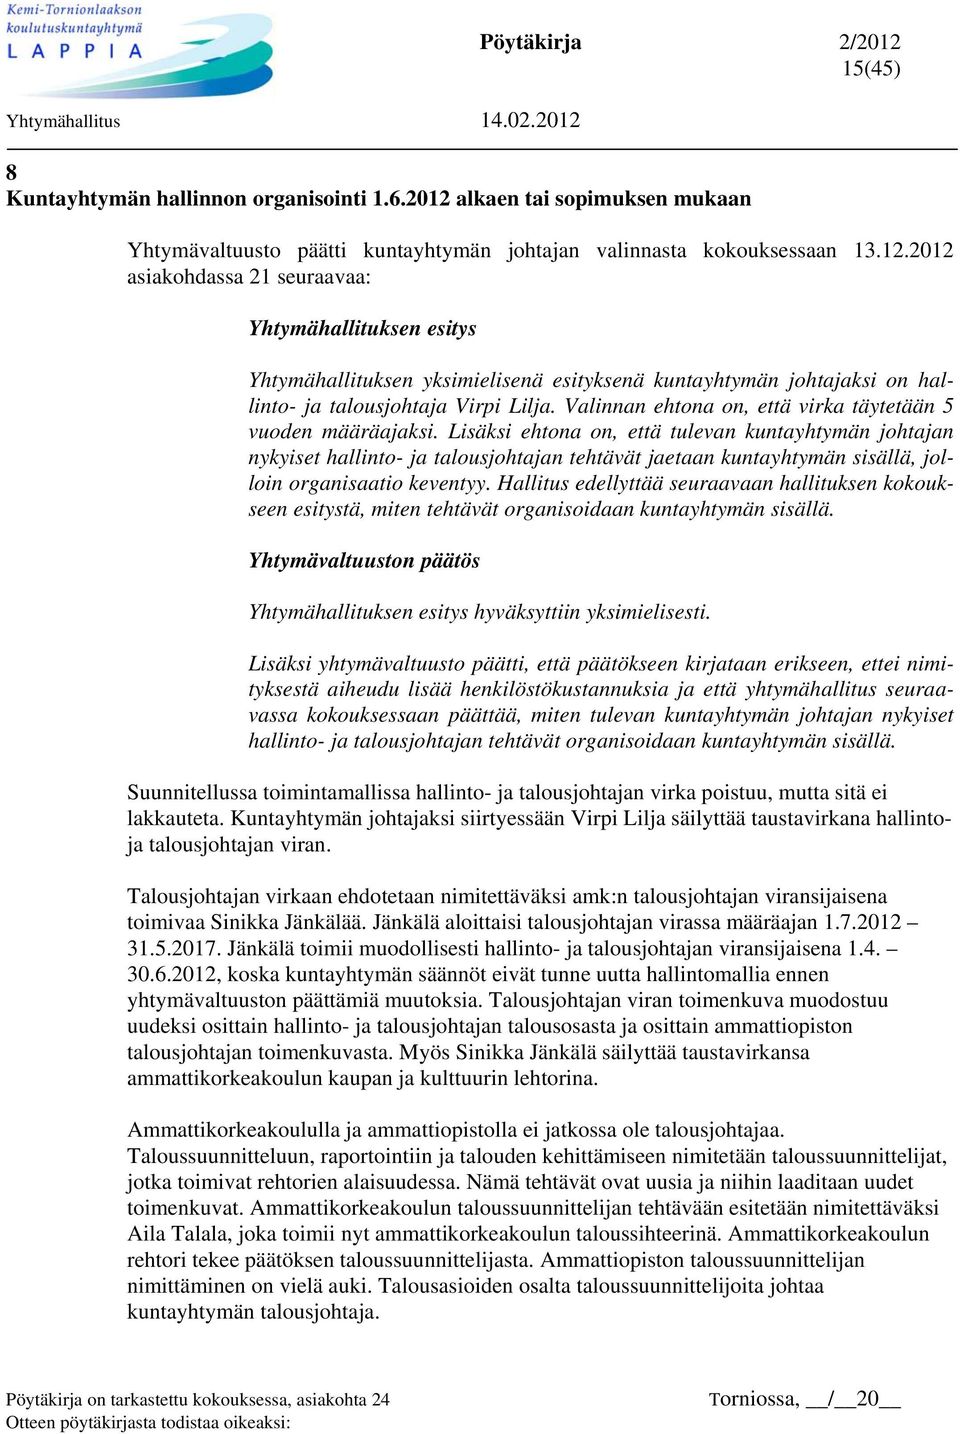 2012 asiakohdassa 21 seuraavaa: Yhtymähallituksen esitys Yhtymähallituksen yksimielisenä esityksenä kuntayhtymän johtajaksi on hallinto- ja talousjohtaja Virpi Lilja.